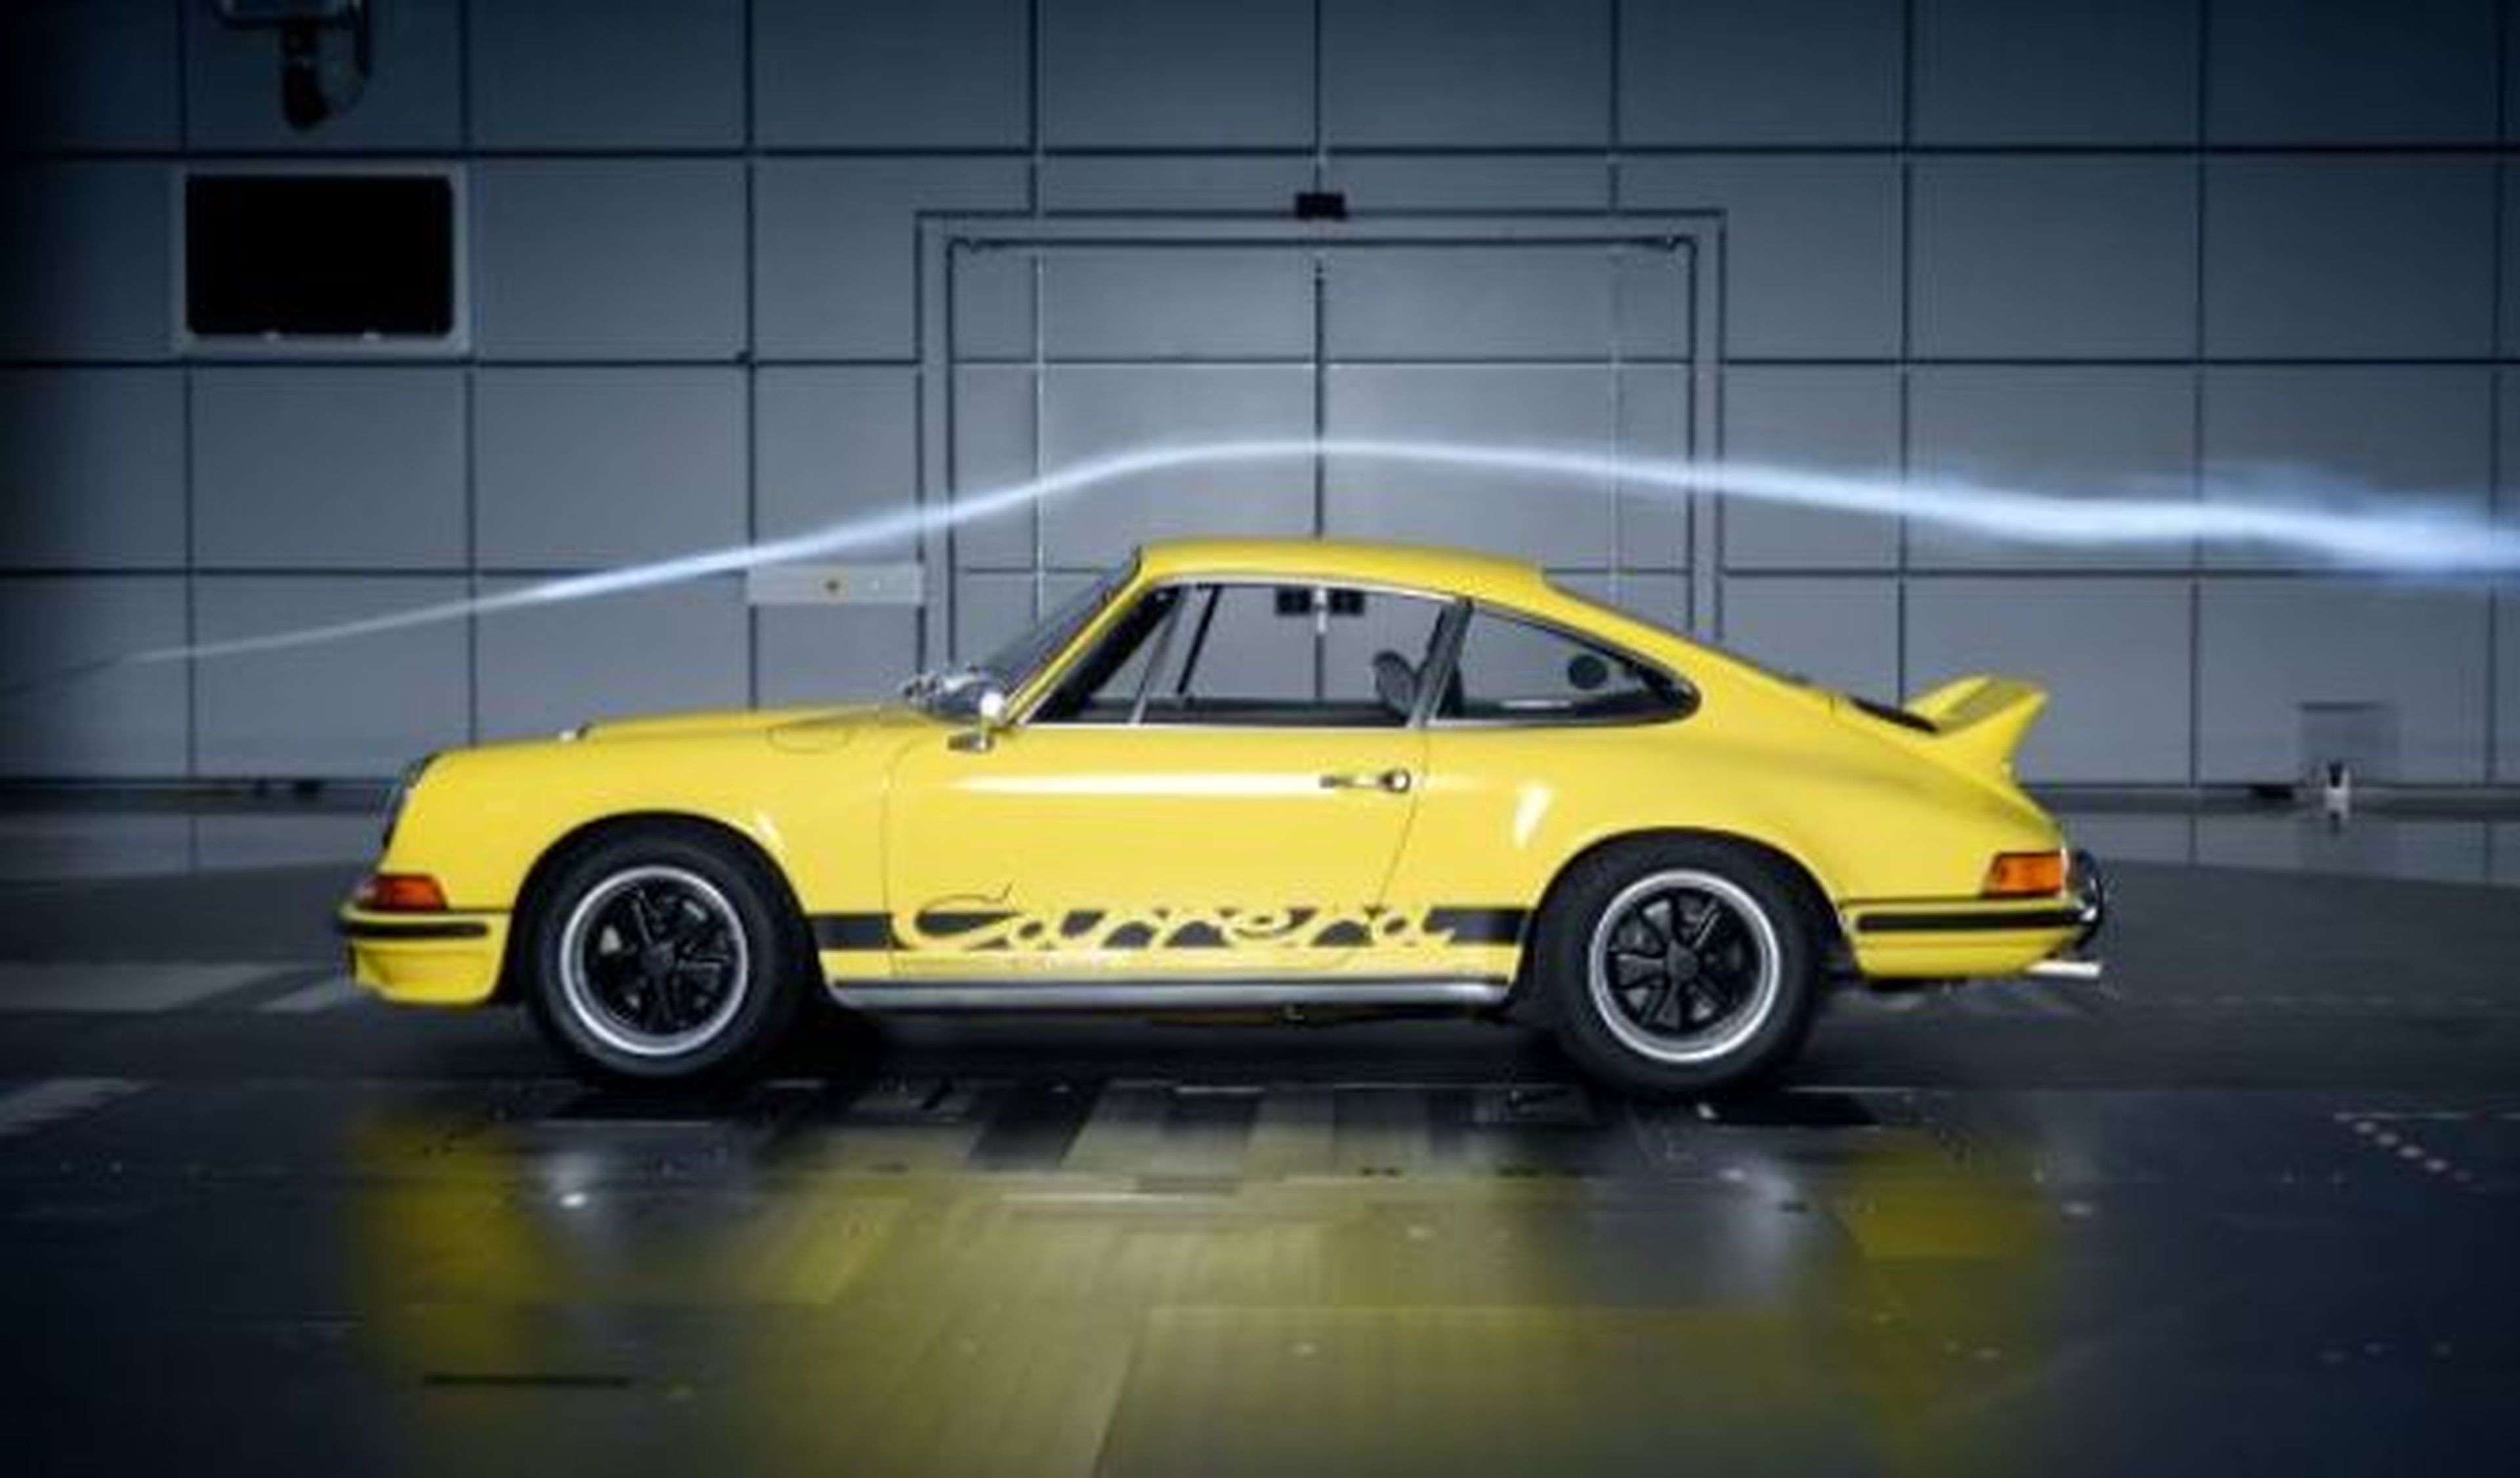 Vídeo: top 5 de los mejores spoilers y alerones de Porsche